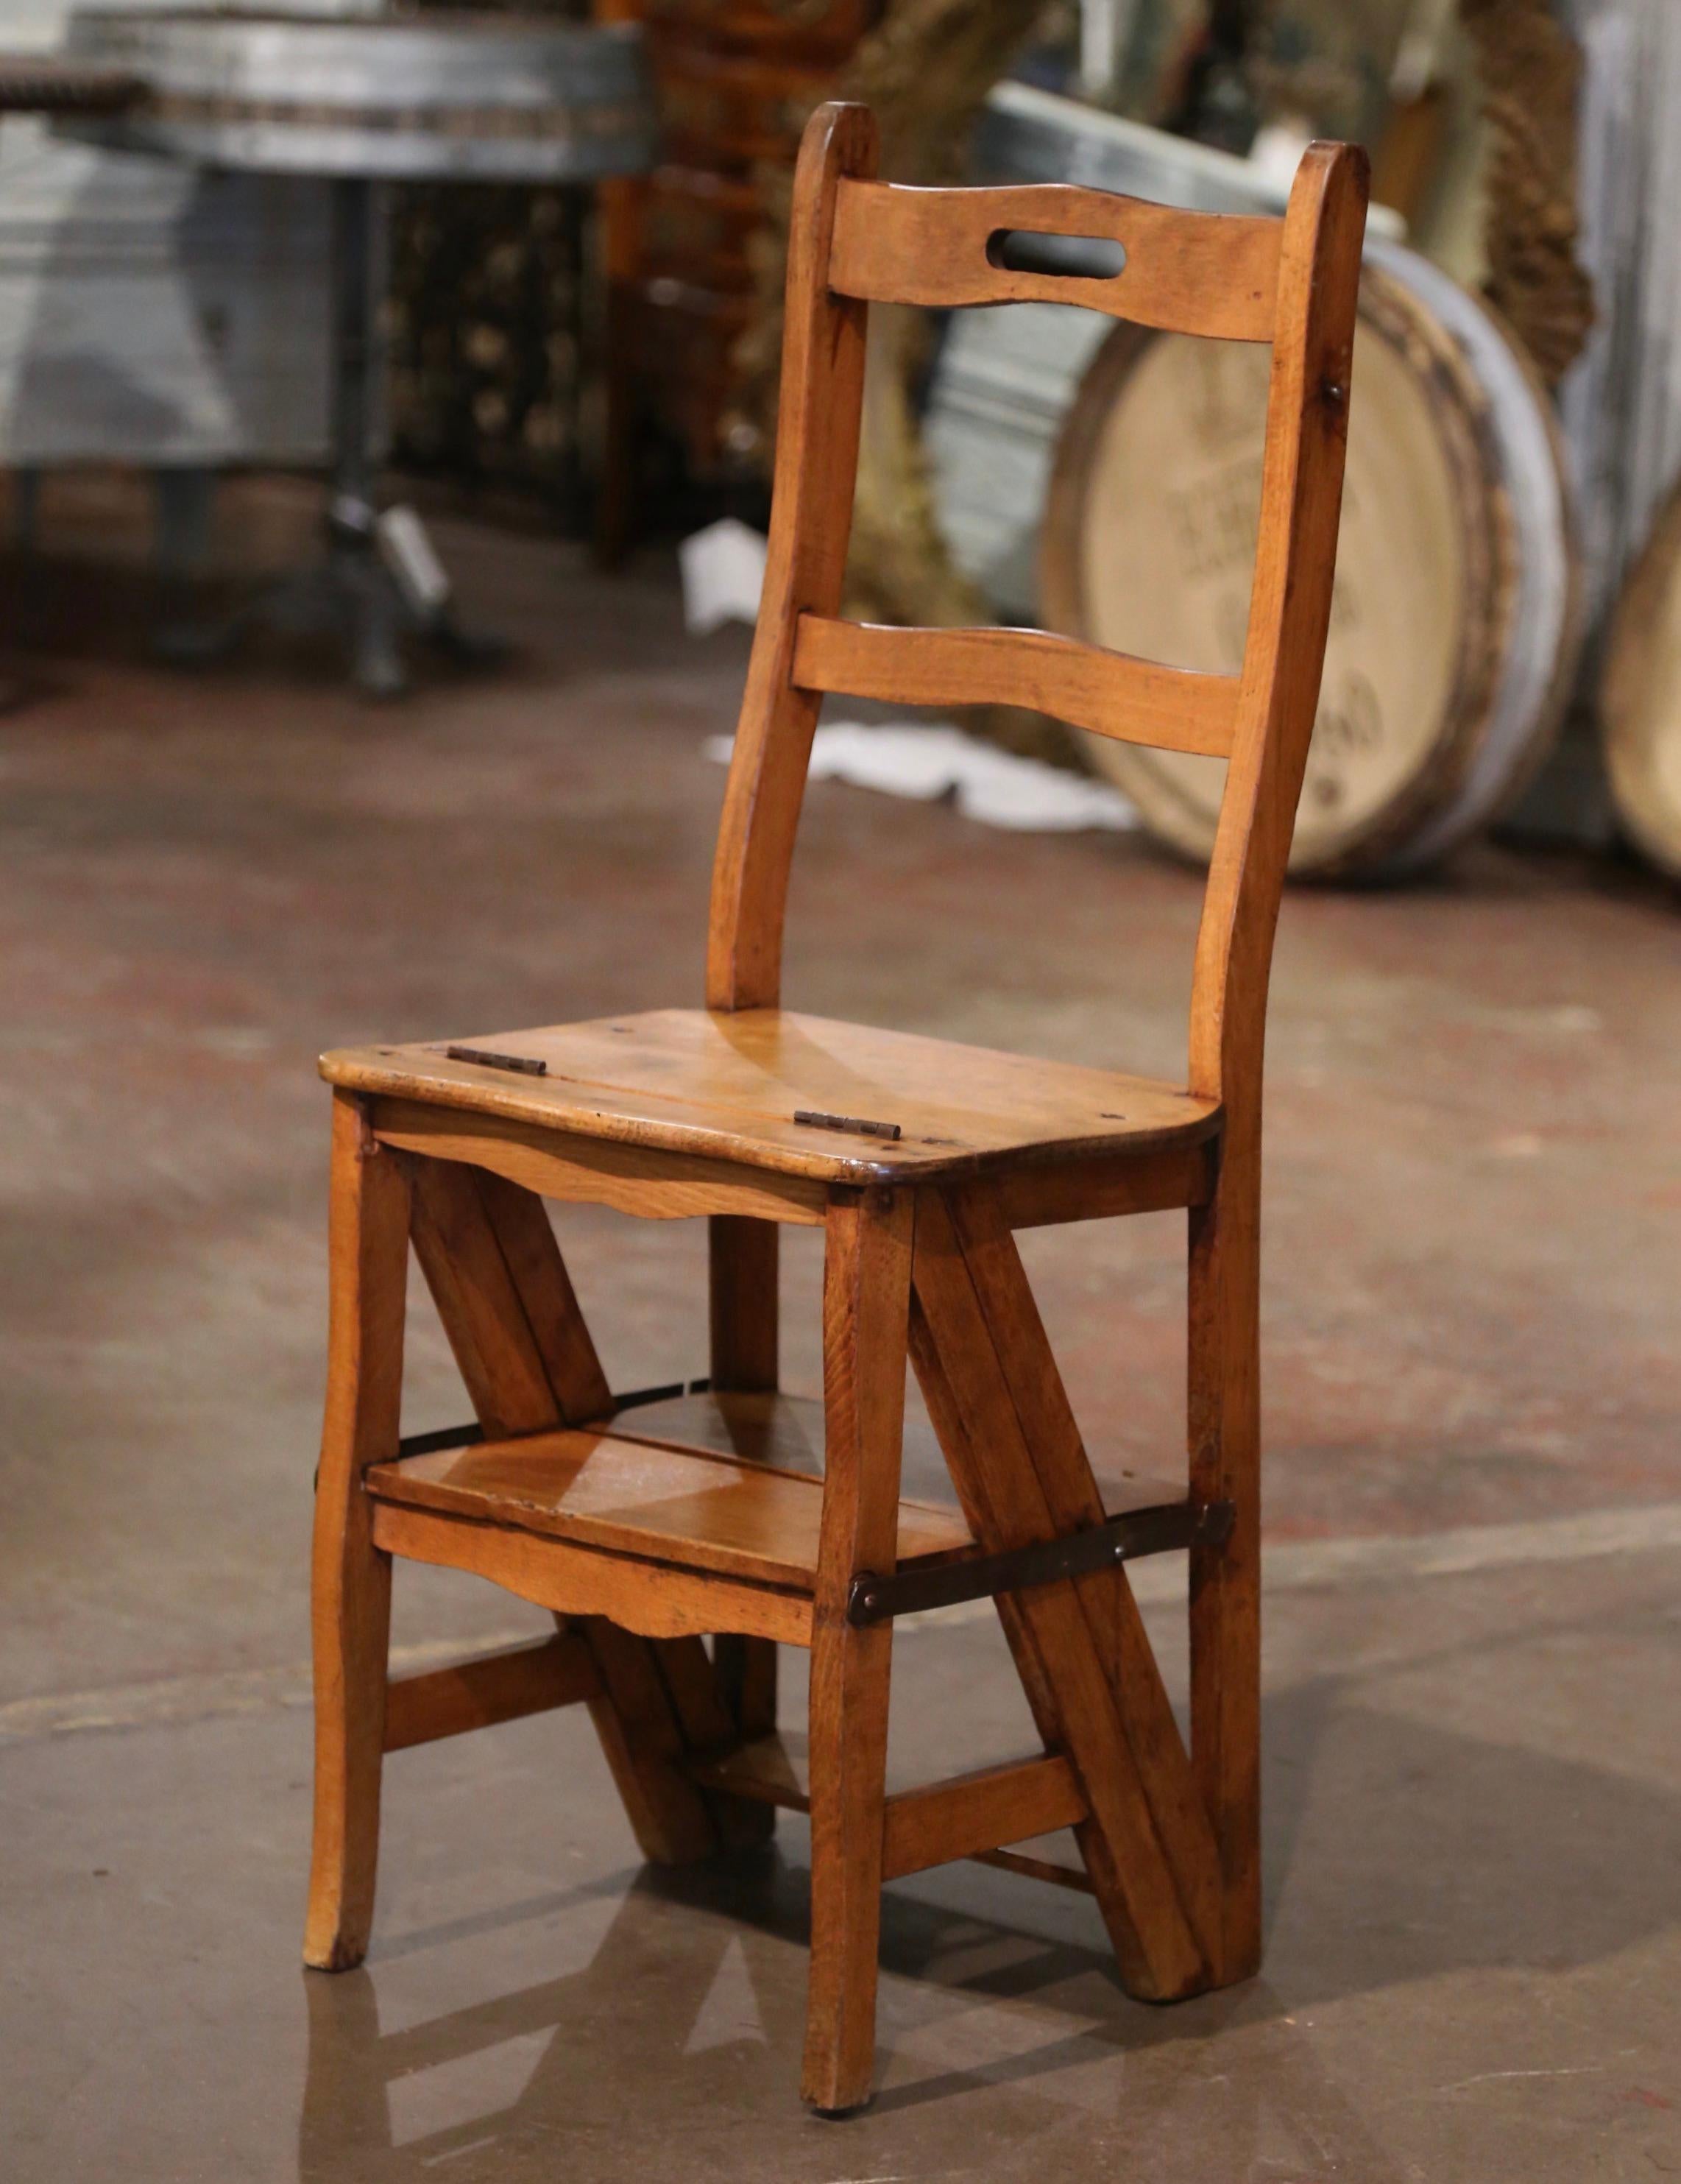 Décorez une bibliothèque ou un bureau avec cette chaise escabeau pliante fabriquée artisanalement. Fabriquée dans le sud de la France vers 1880, cette chaise métamorphique présente deux échelles sculptées à l'arrière avec une poignée permettant de